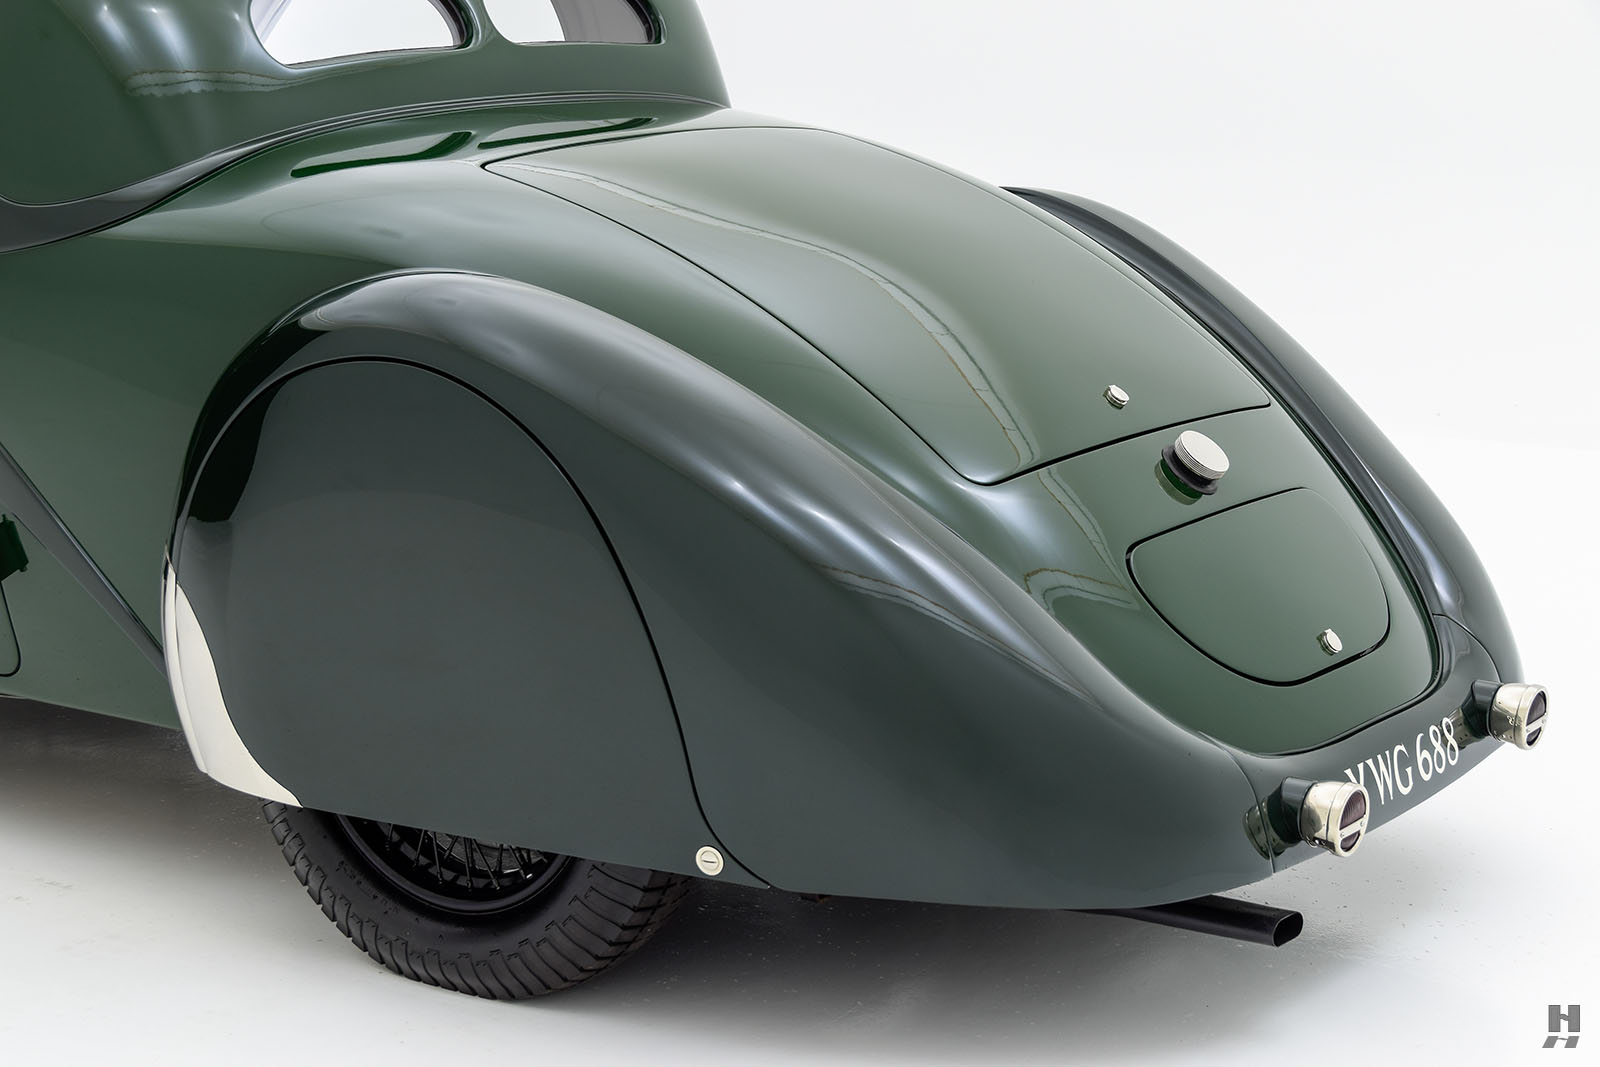 1934 bugatti type 57 ventoux